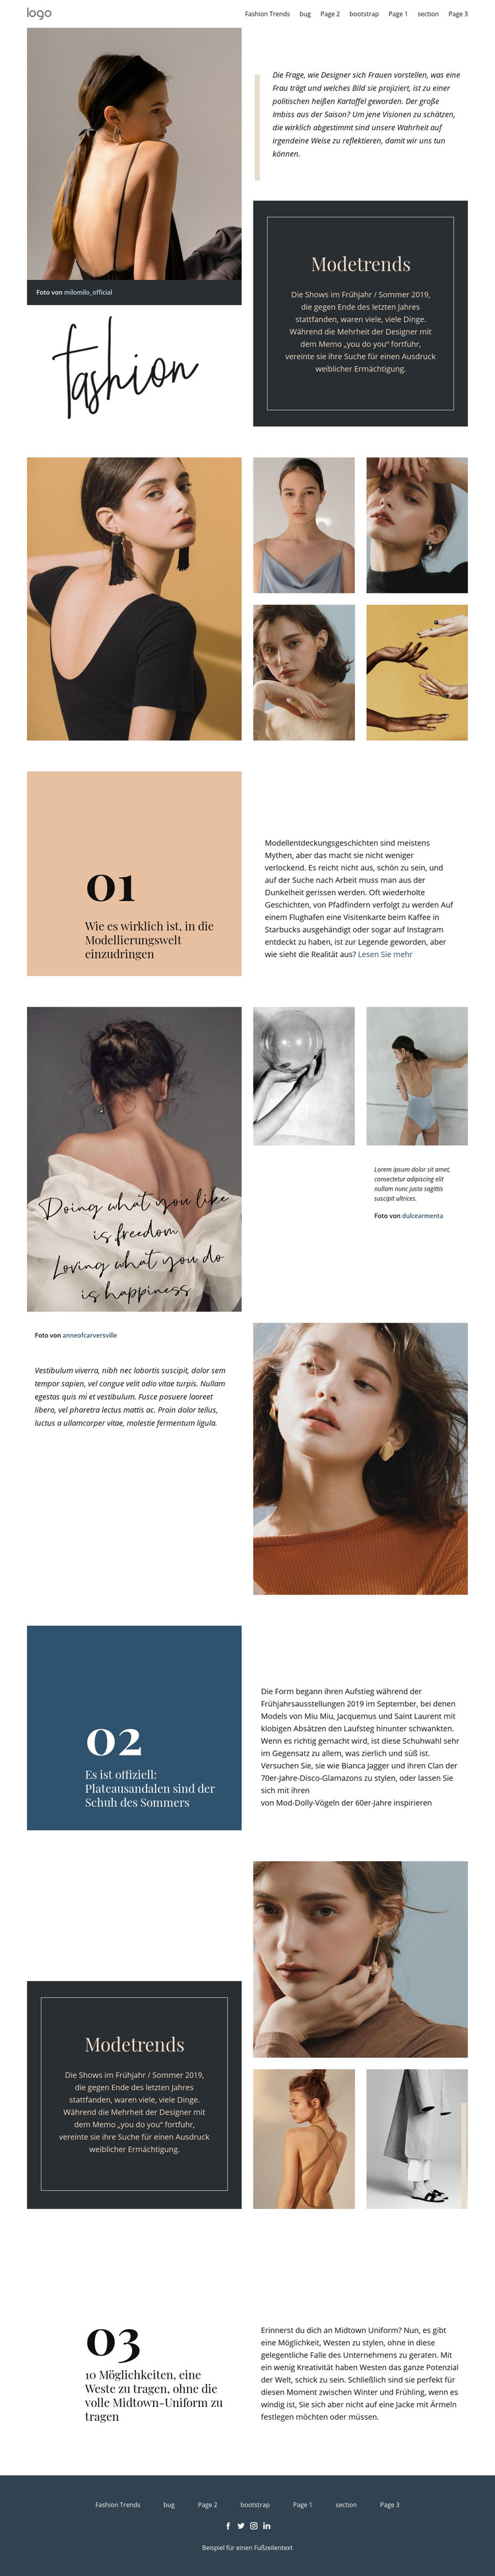 Designer Vision von Mode Website-Vorlage